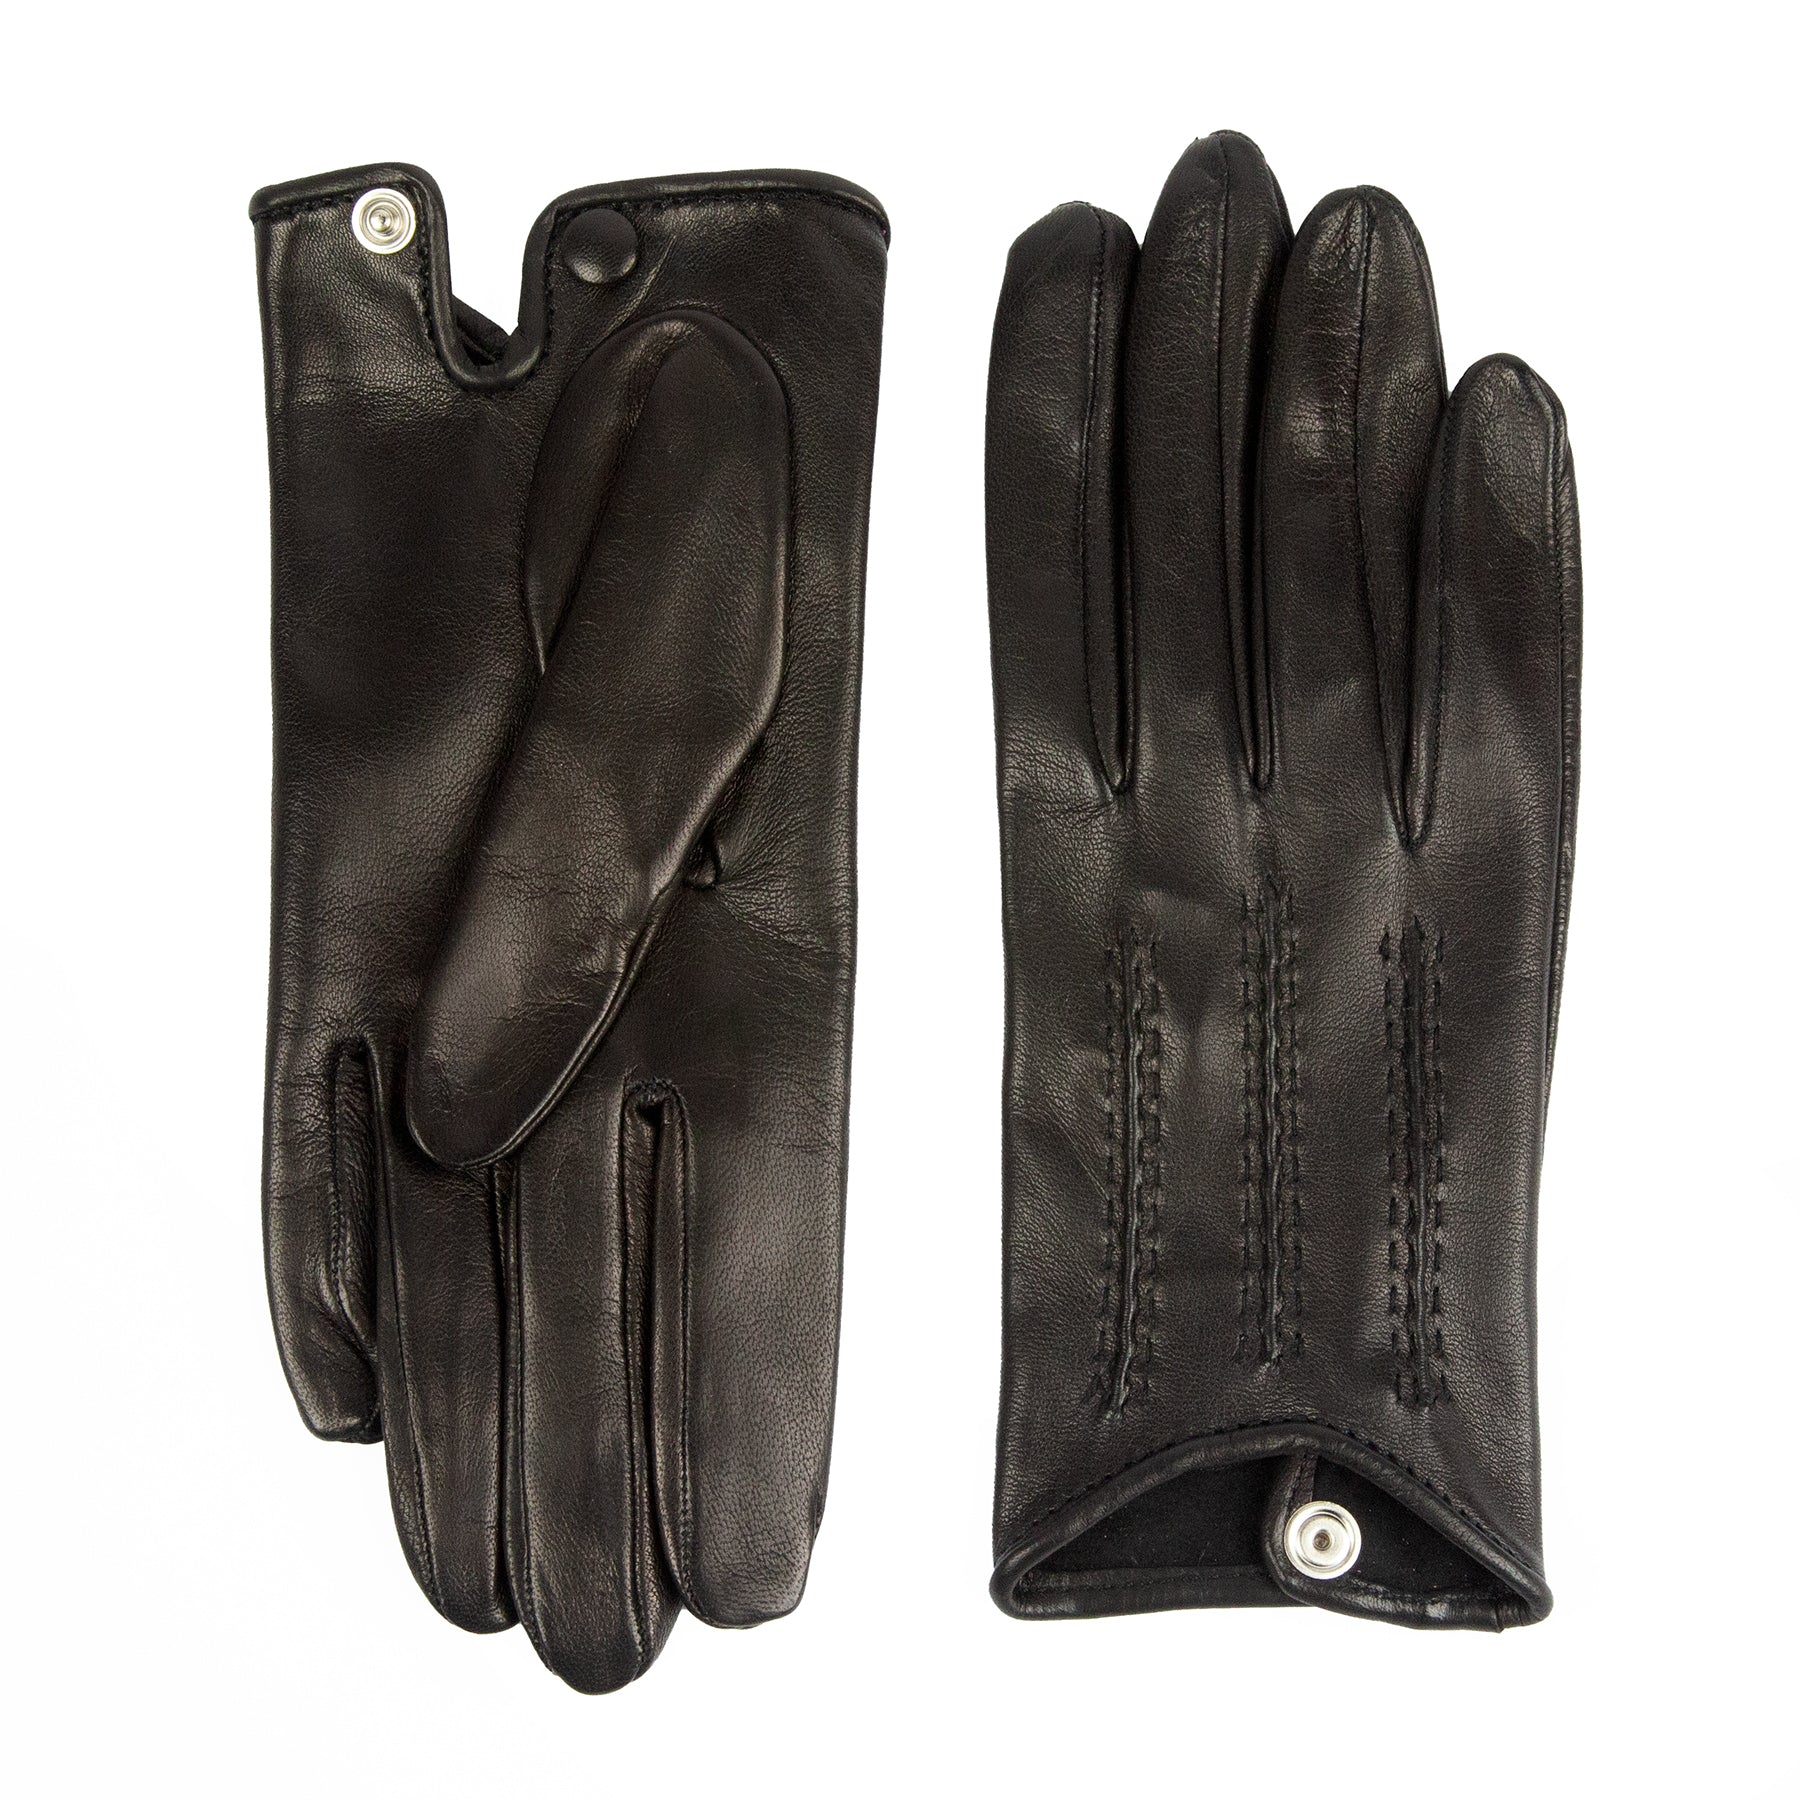 Women's unlined black spring gloves